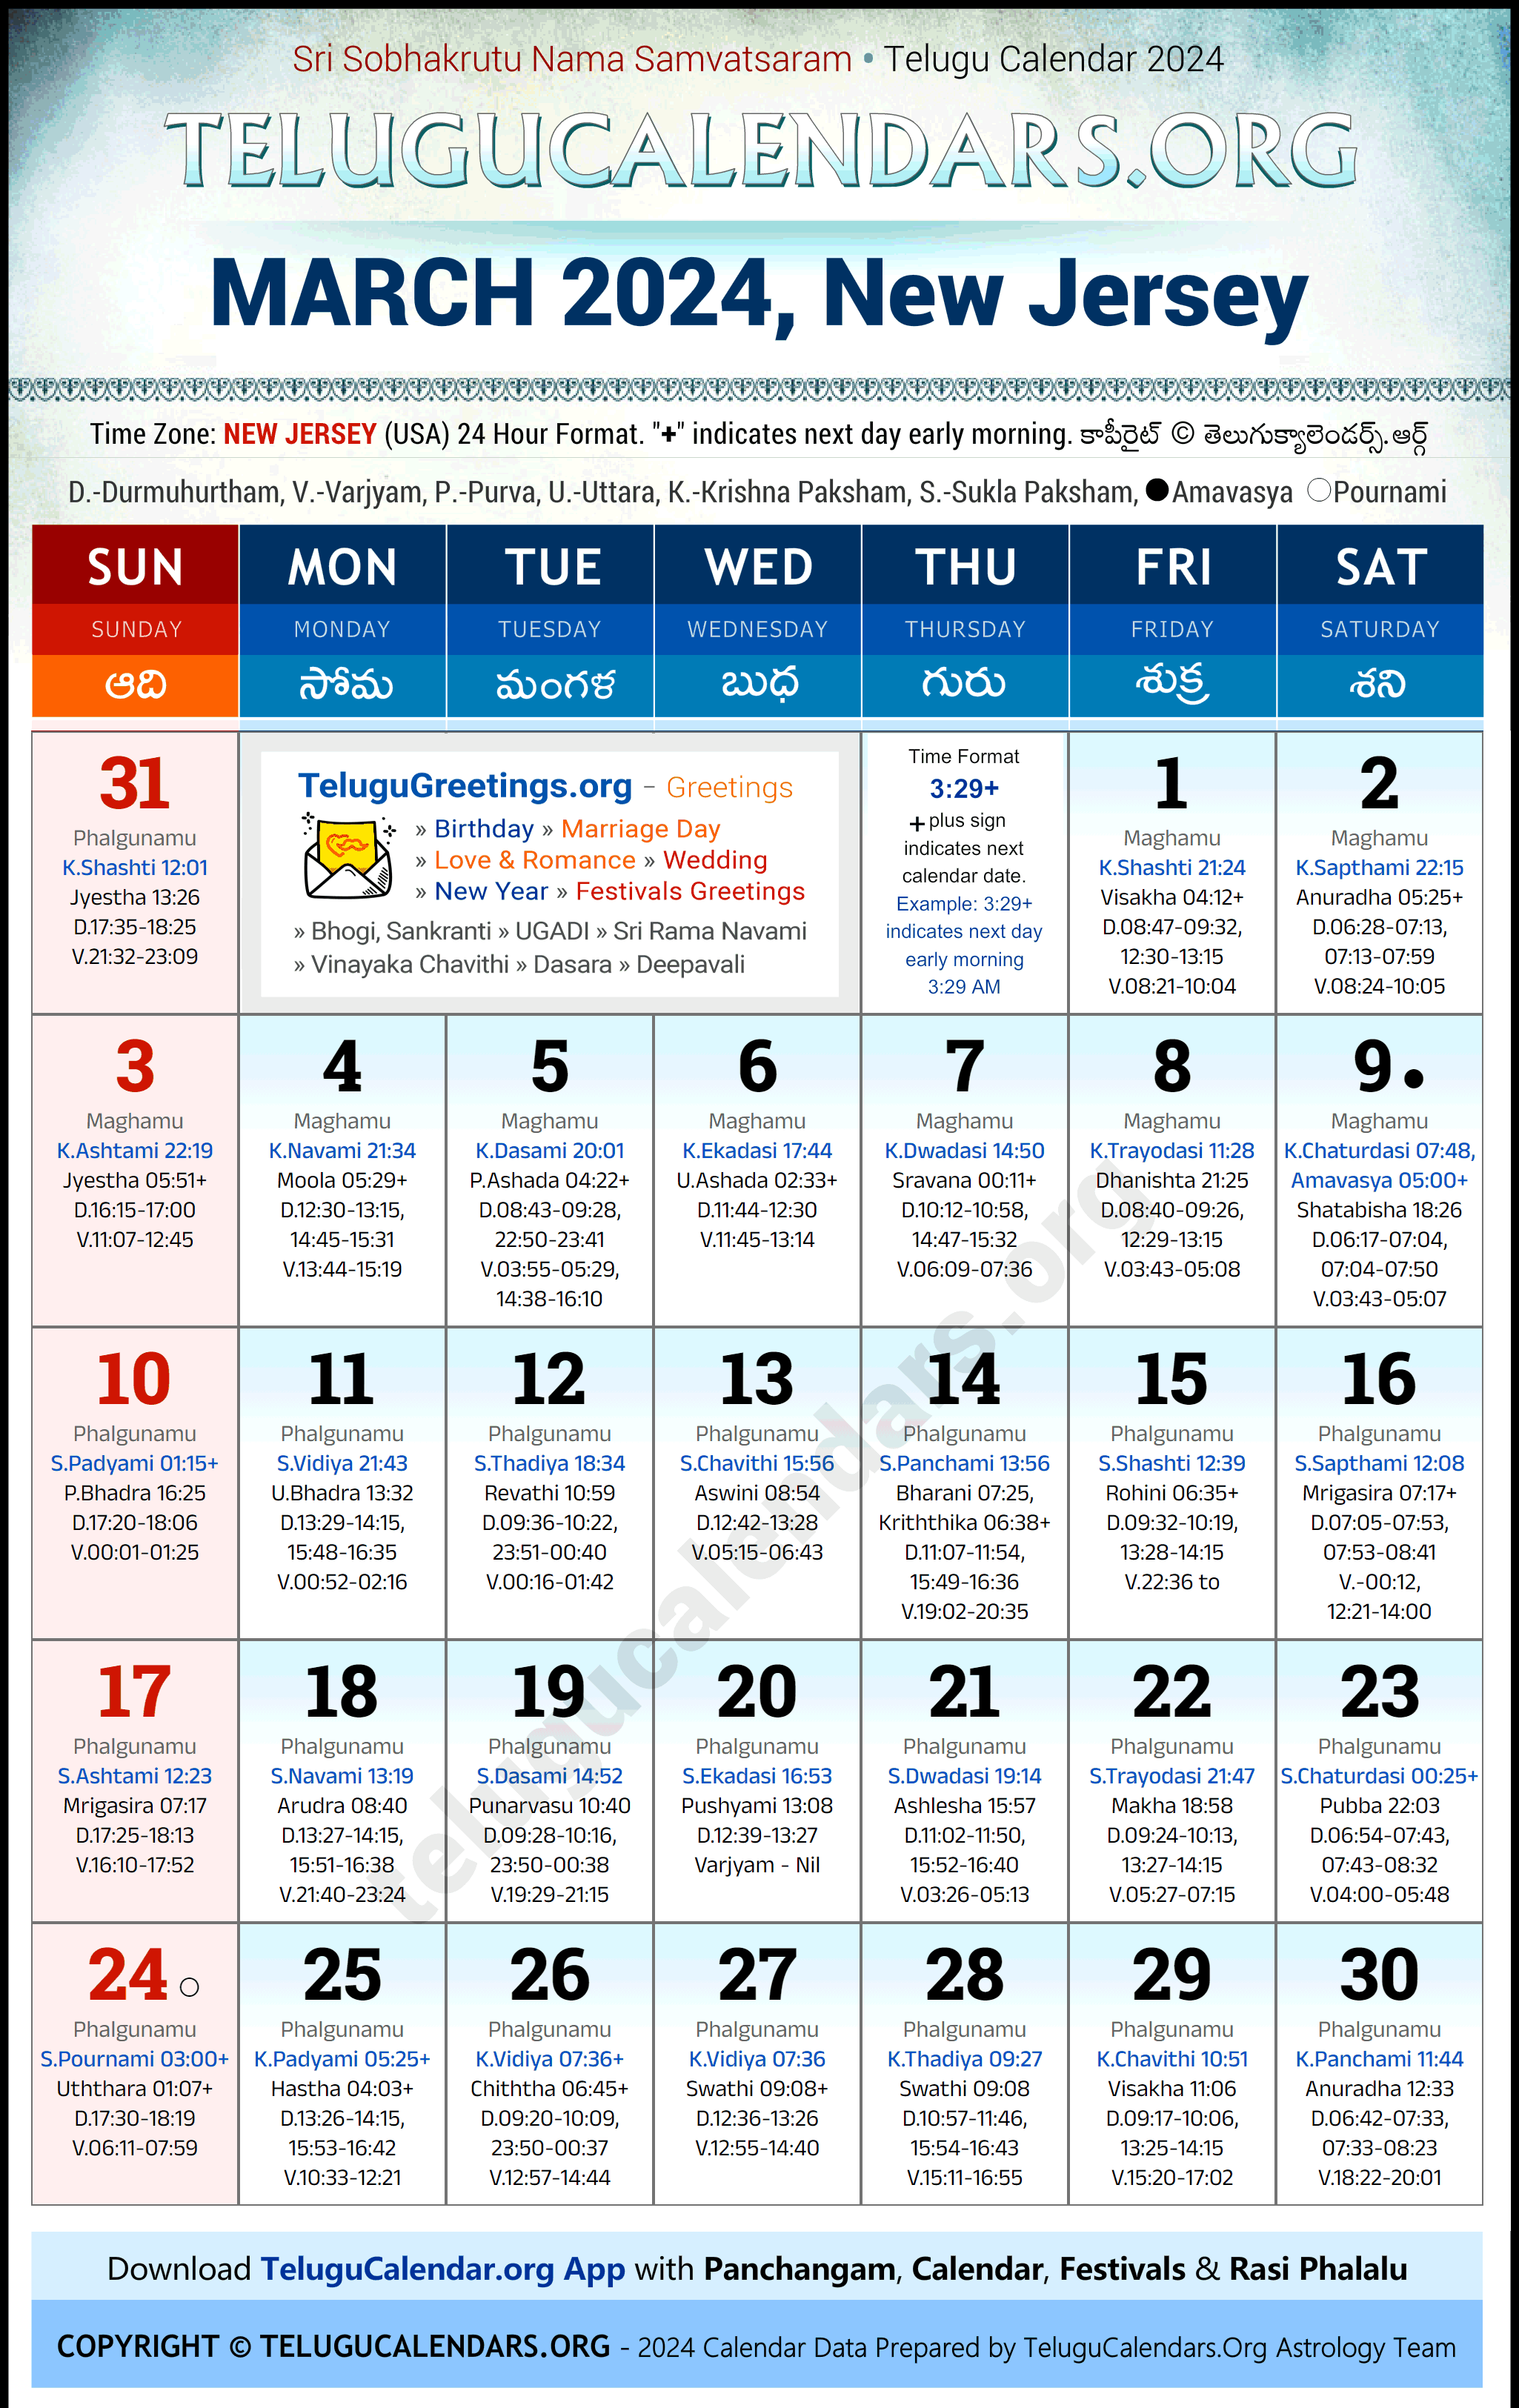 Telugu Calendar 2024 March Festivals for New Jersey